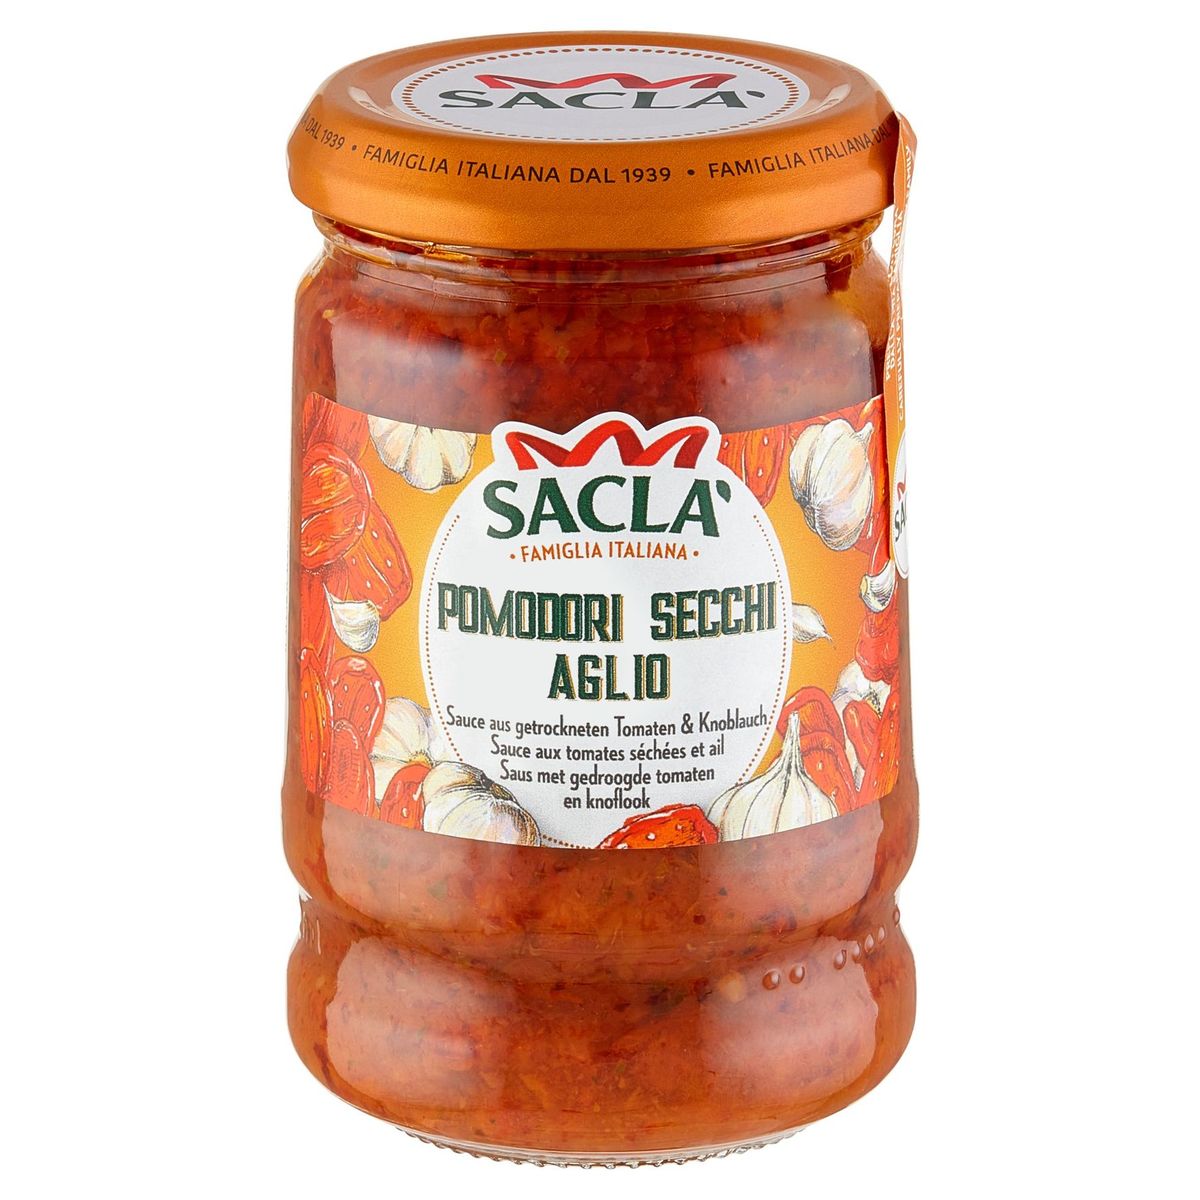 Sacla' Pomodori Secchi Aglio Sauce aux Tomates Séchées et Ail 190 g